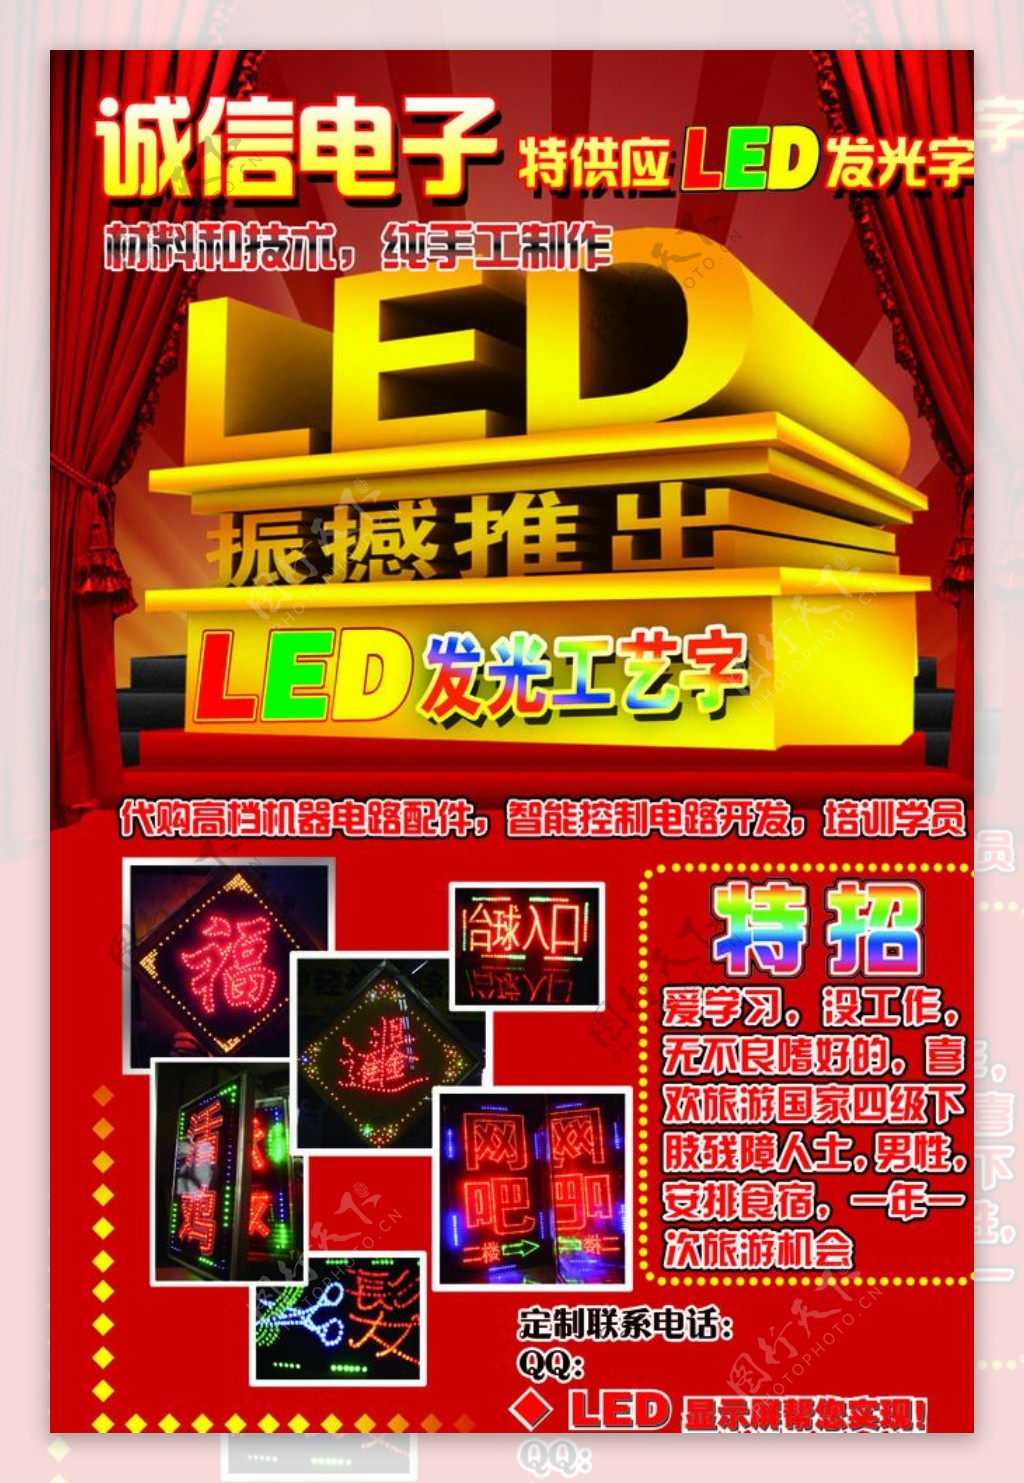 LED广告海报图片